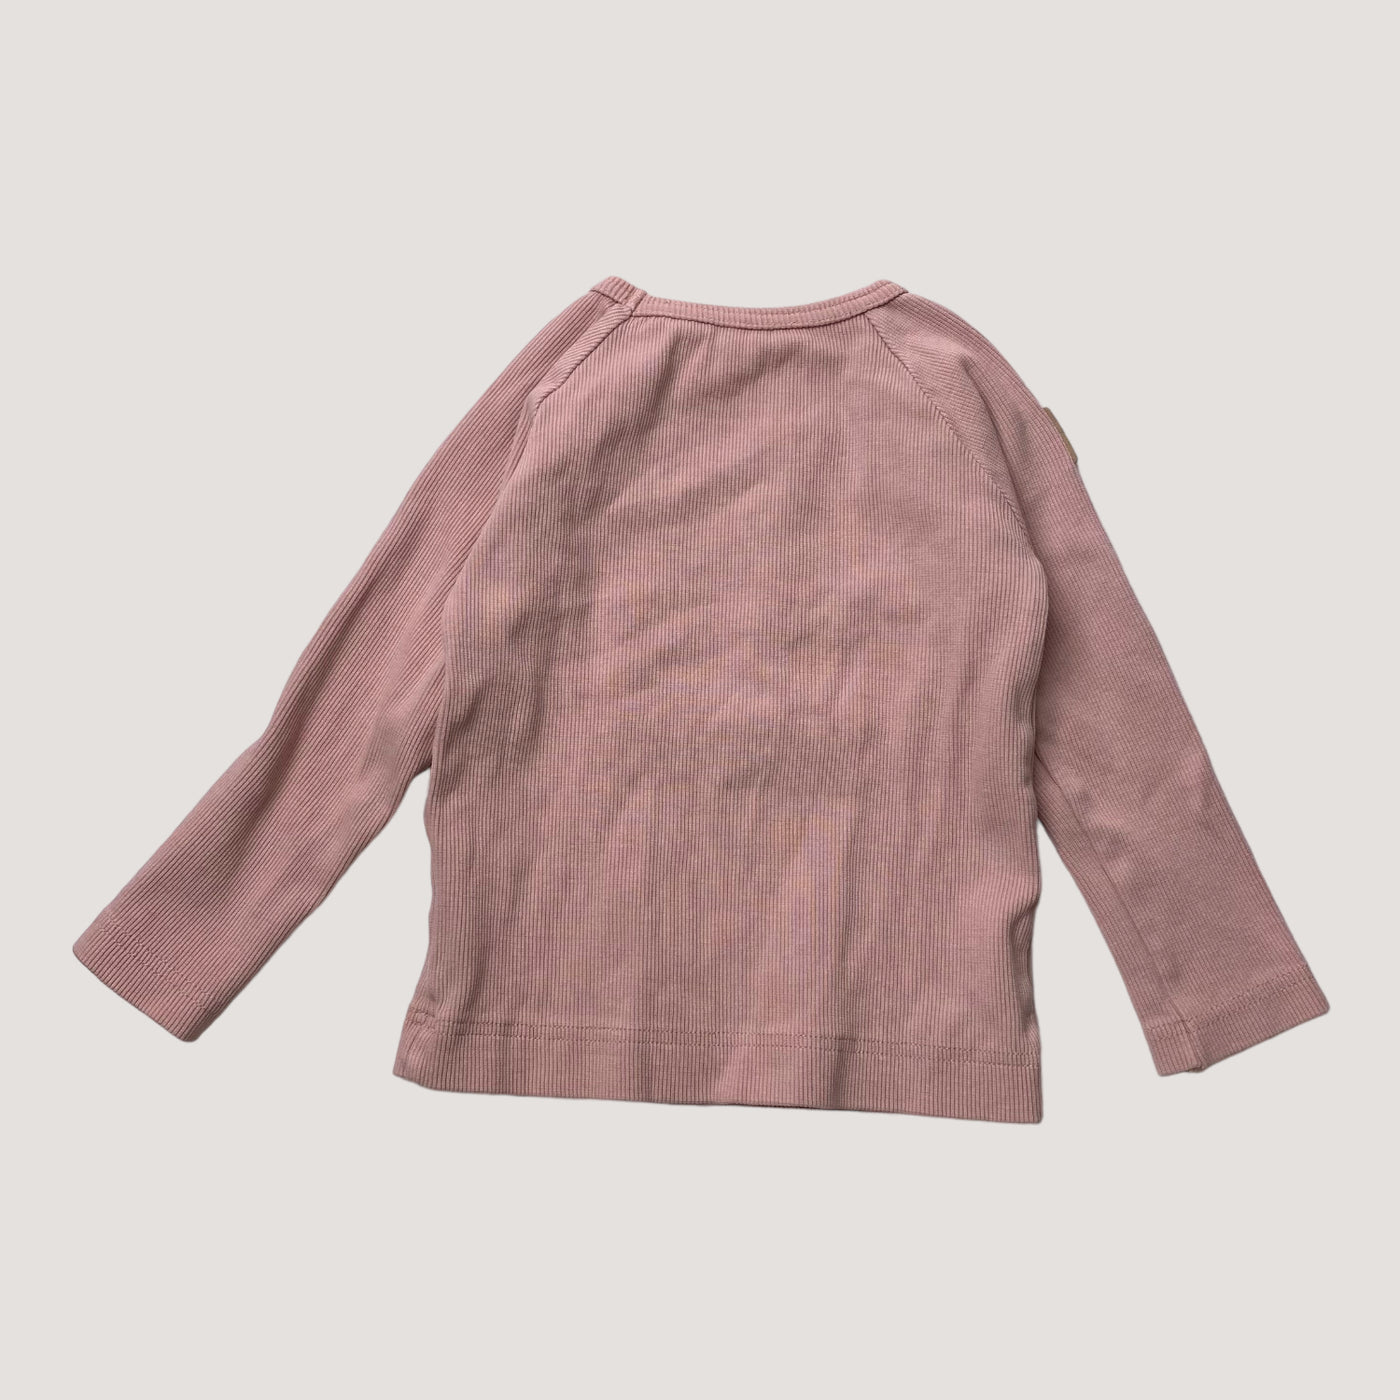 Metsola rib shirt, pink | 80cm